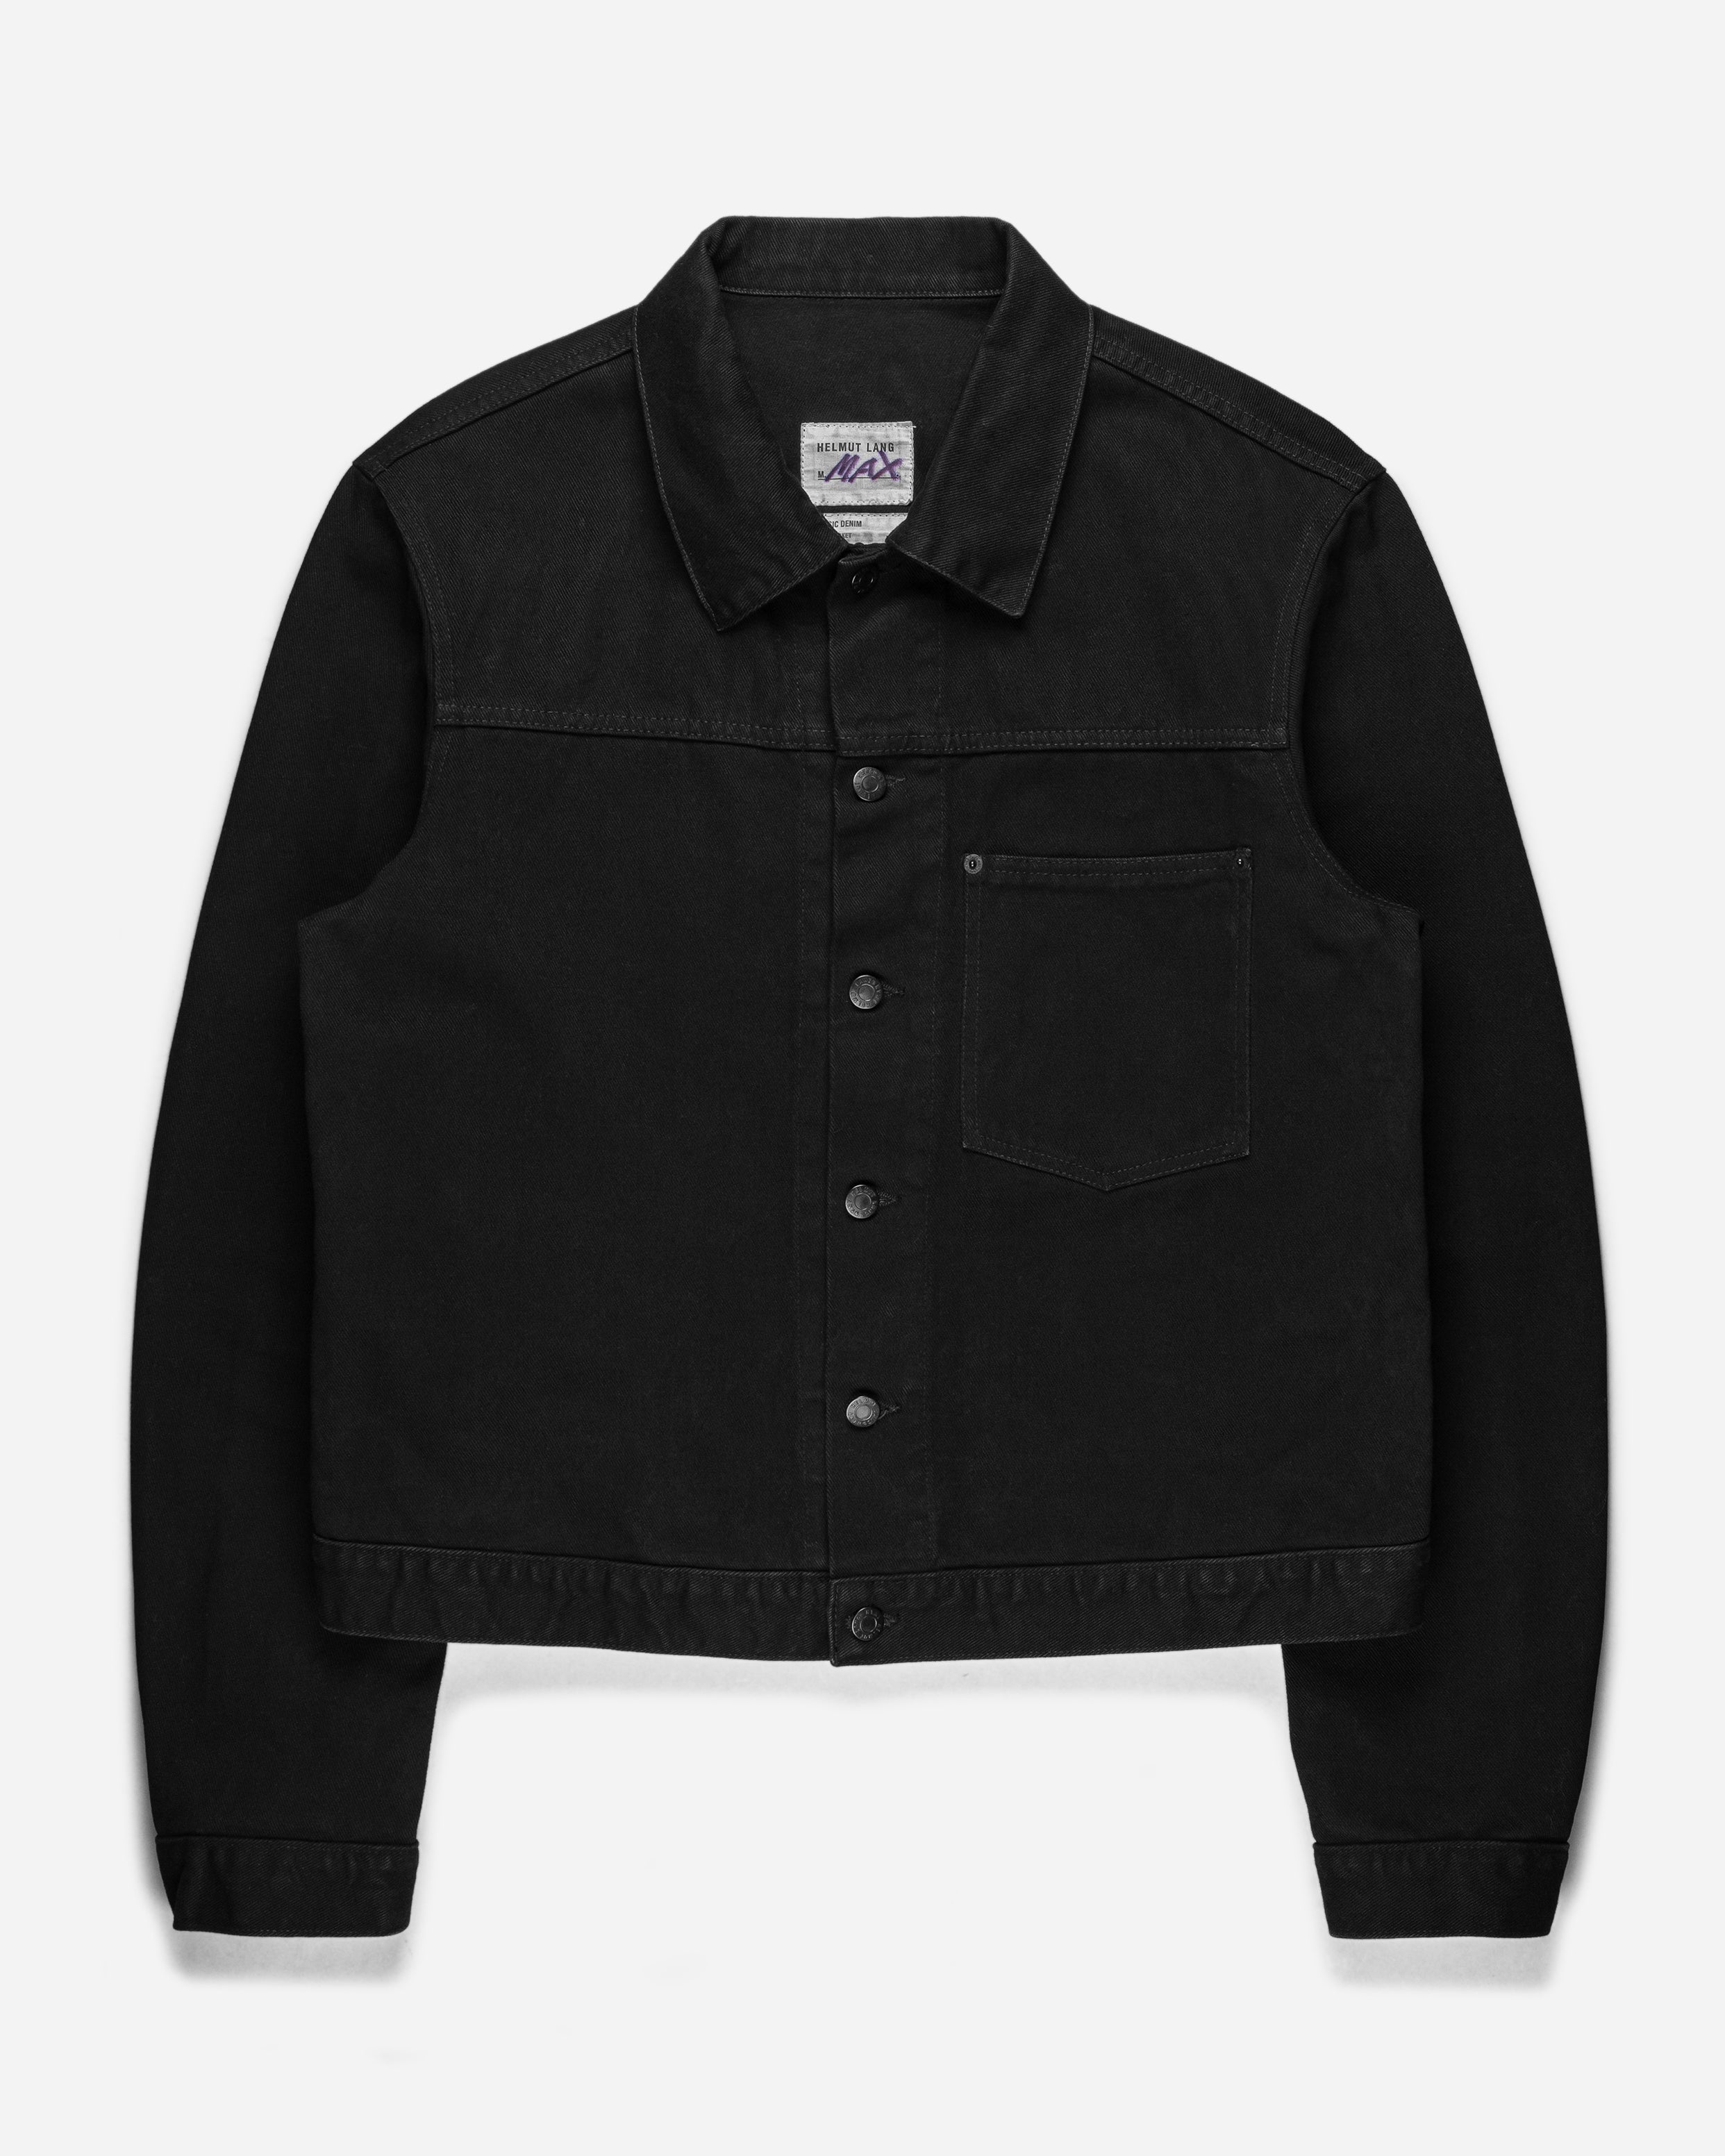 20,300円Helmut lang black coating denim jackets